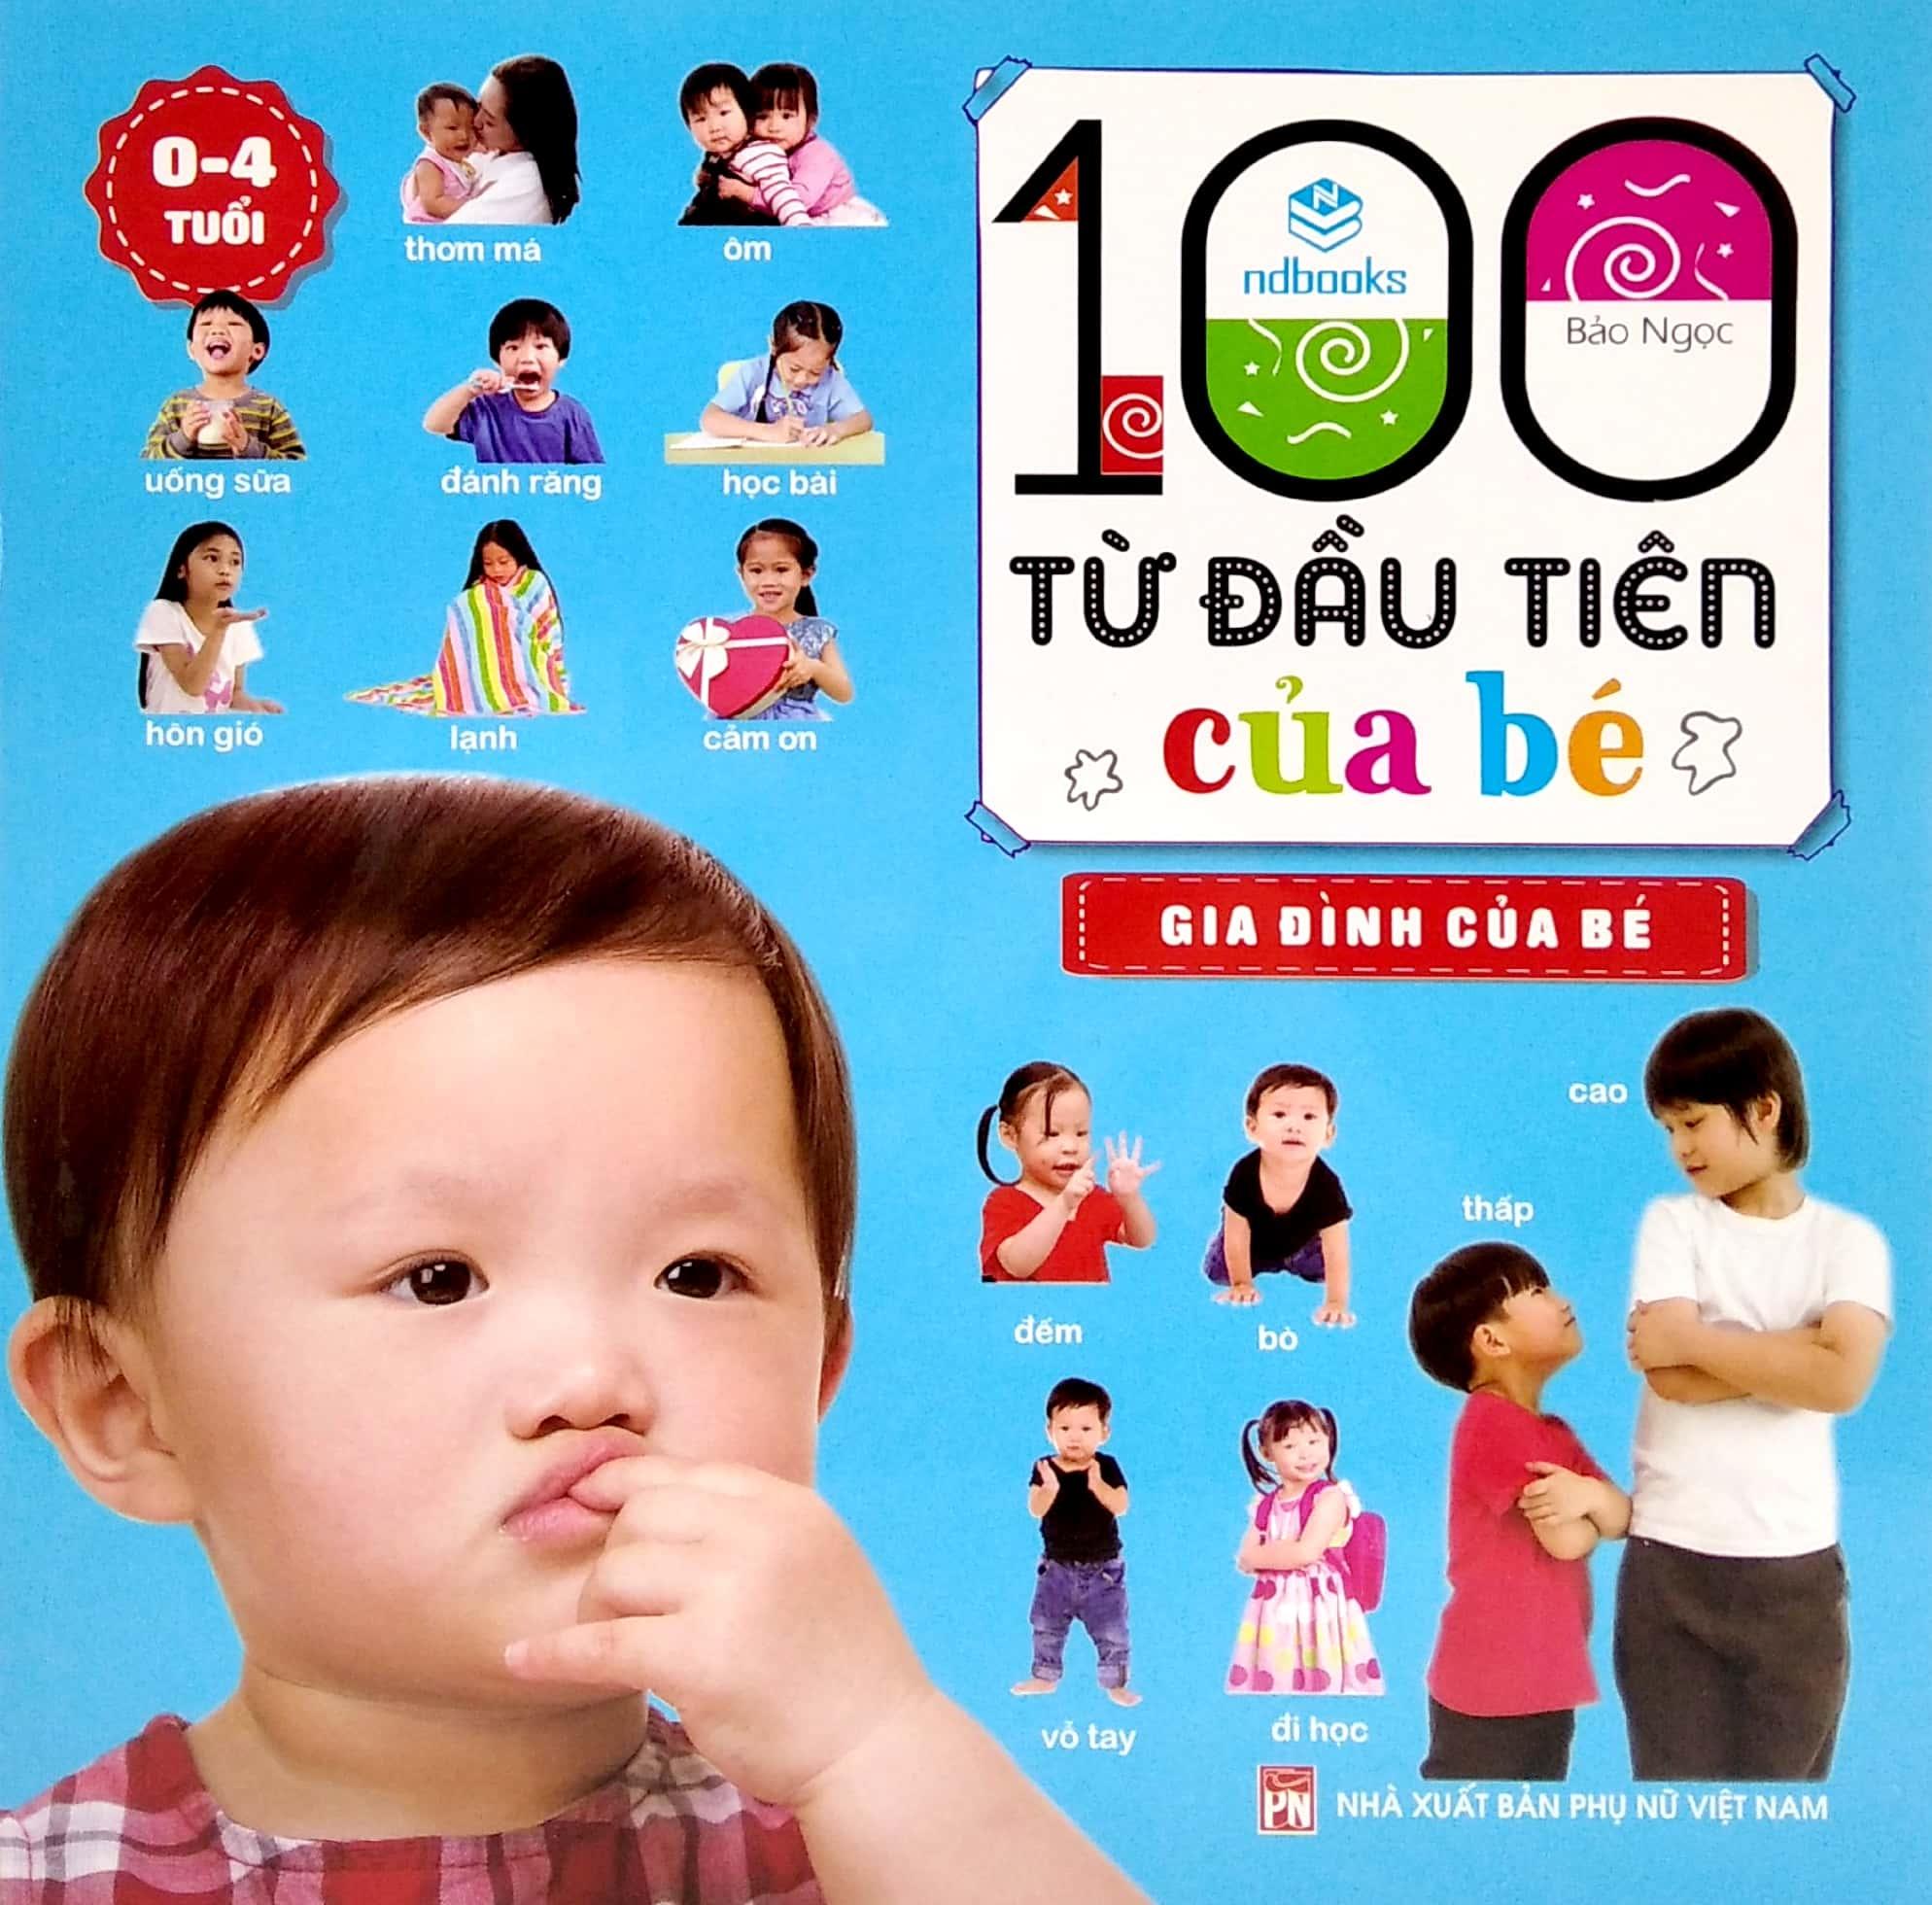 100 Từ Đầu Tiên Của Bé - Gia Đình Của Bé (0-4 Tuổi)